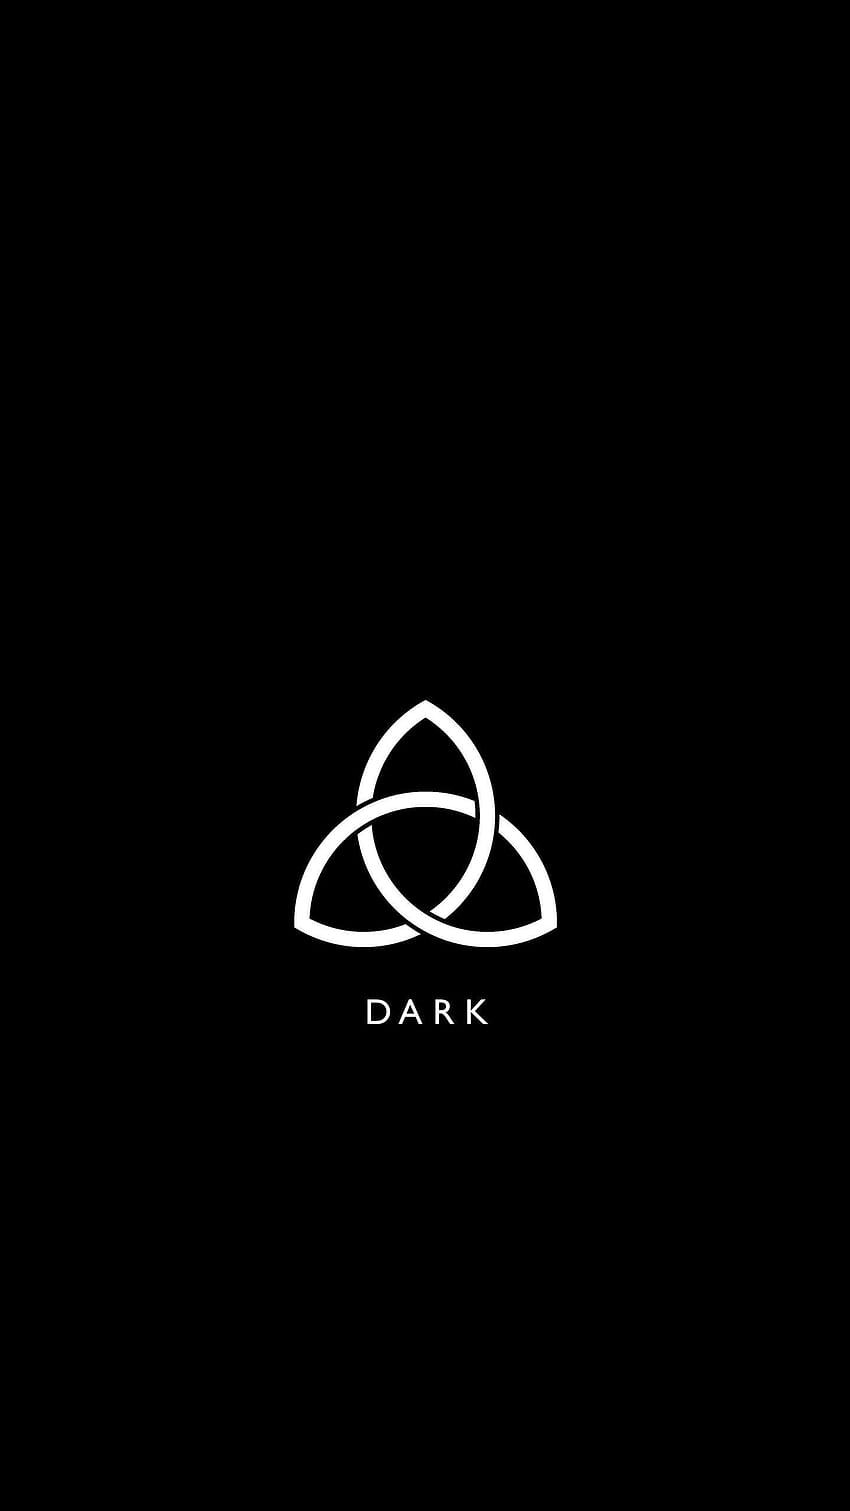 DARK Netflix Mobile : DarK, dark netflix series HD phone wallpaper